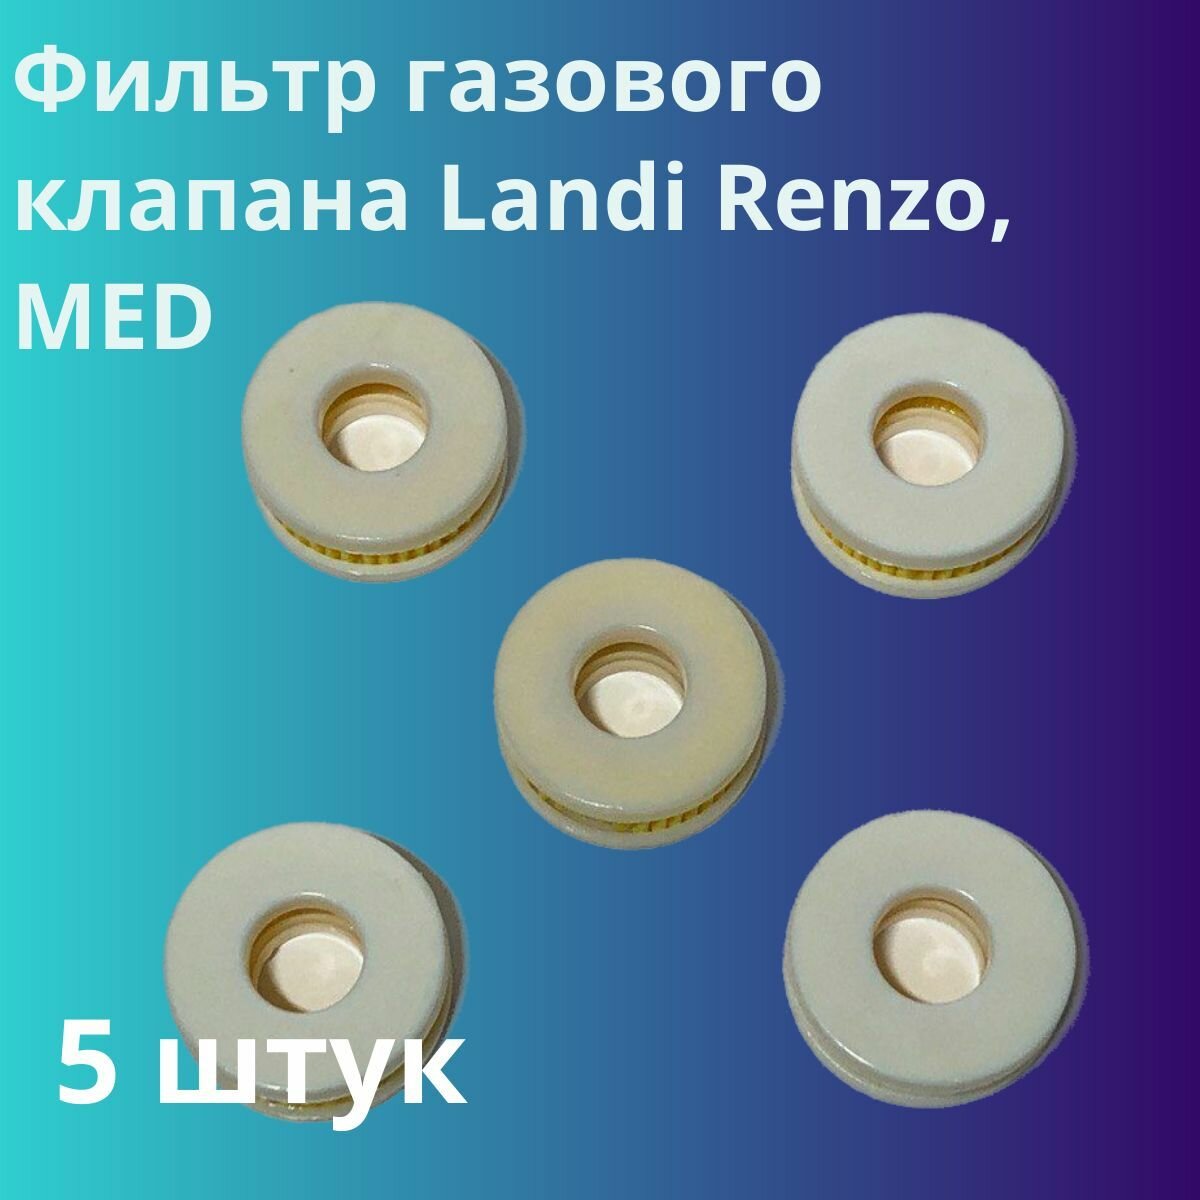 Фильтр газового клапана Landi Renzo, MED - 5 штук